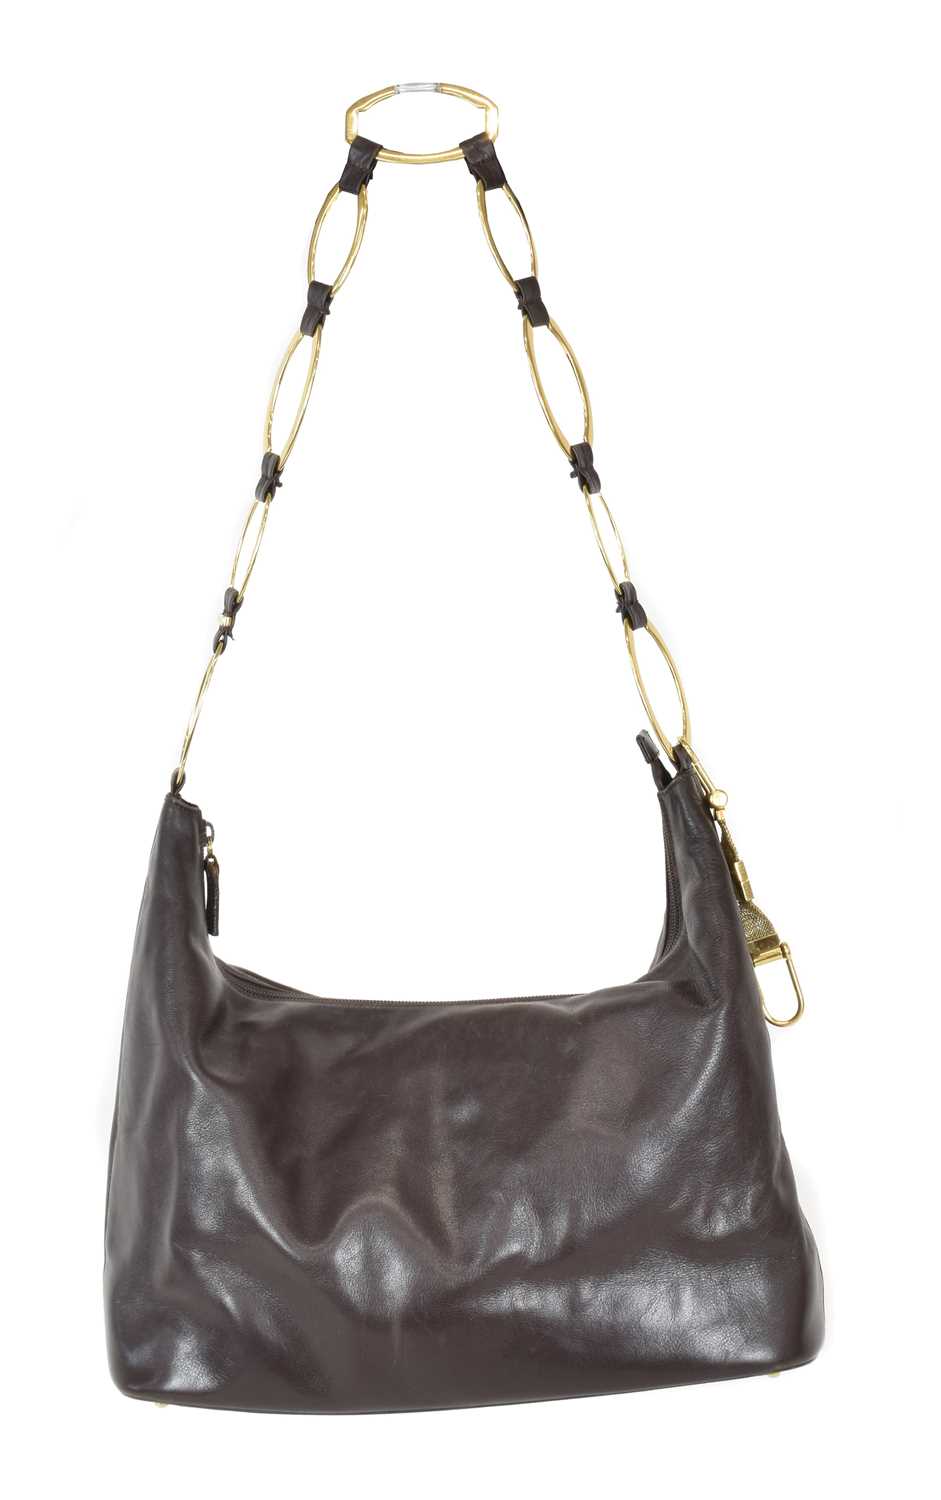 Lot 86 - A Gucci brown hobo handbag